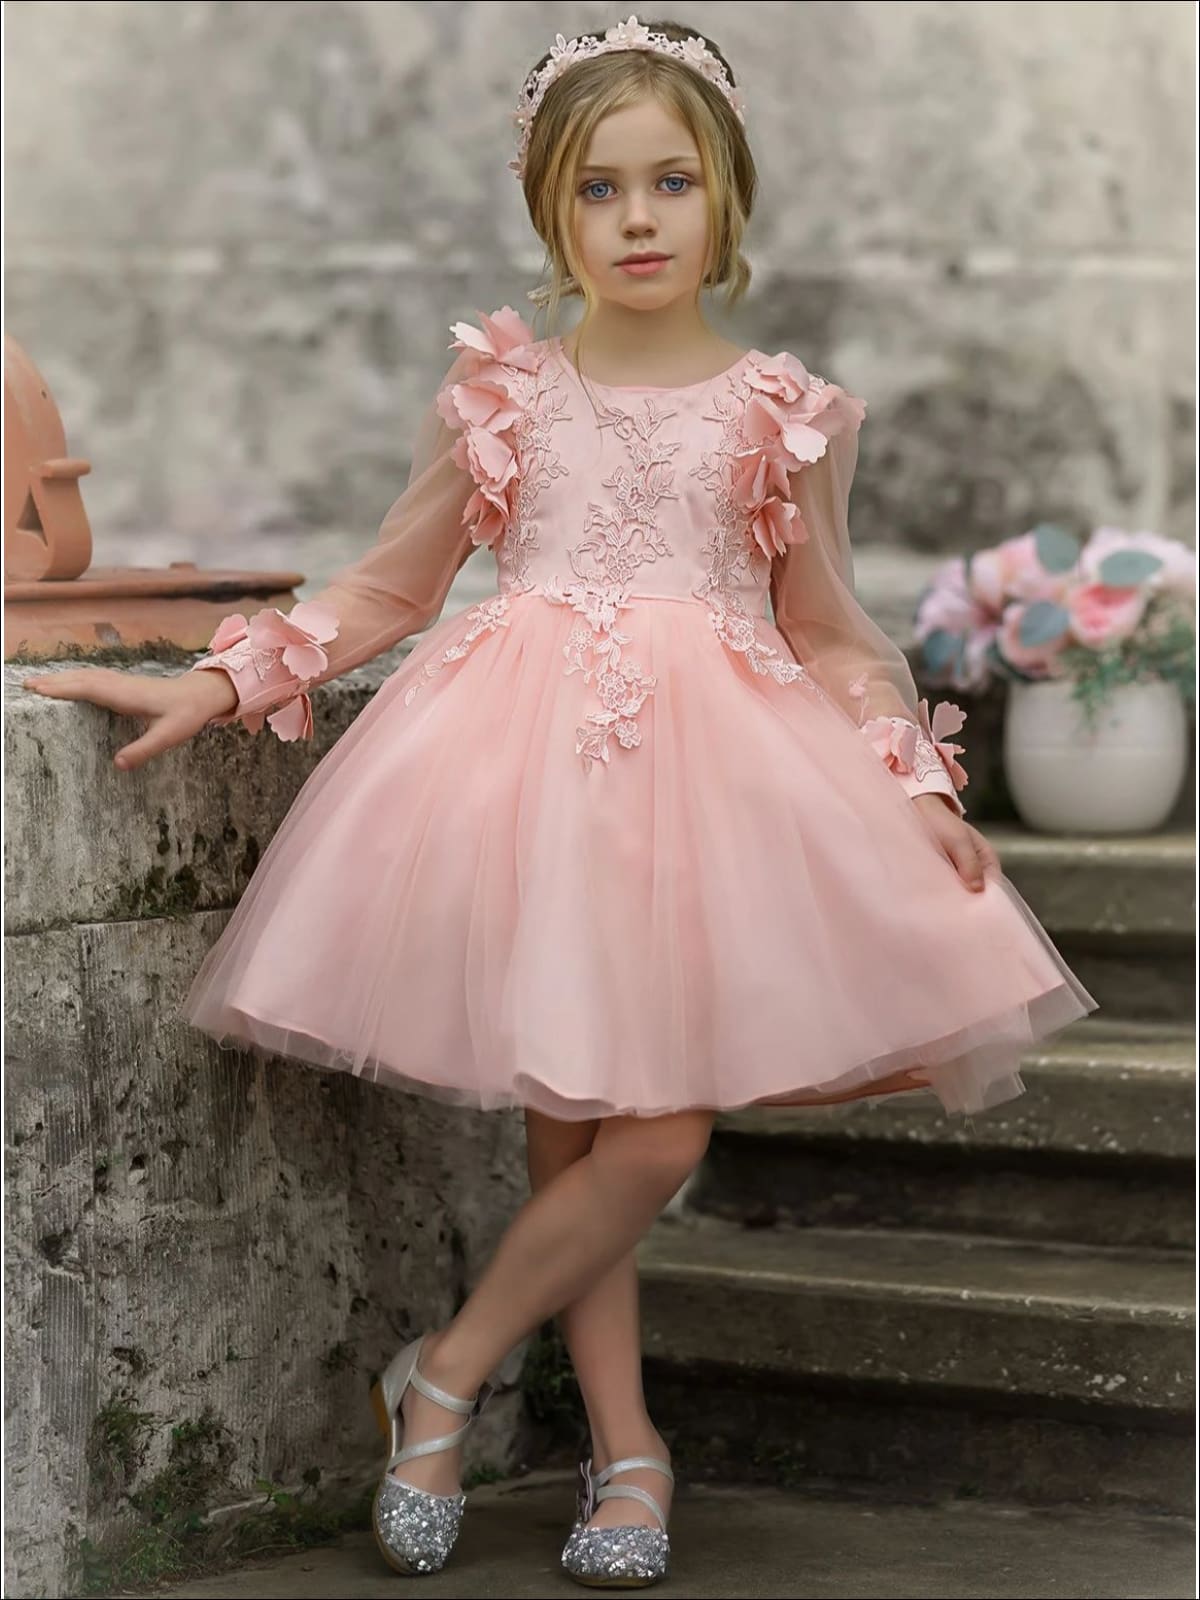 Girls Embellished Flowered Long Sleeve Dress - Pink / 7Y - Girls Spring Dressy Dress